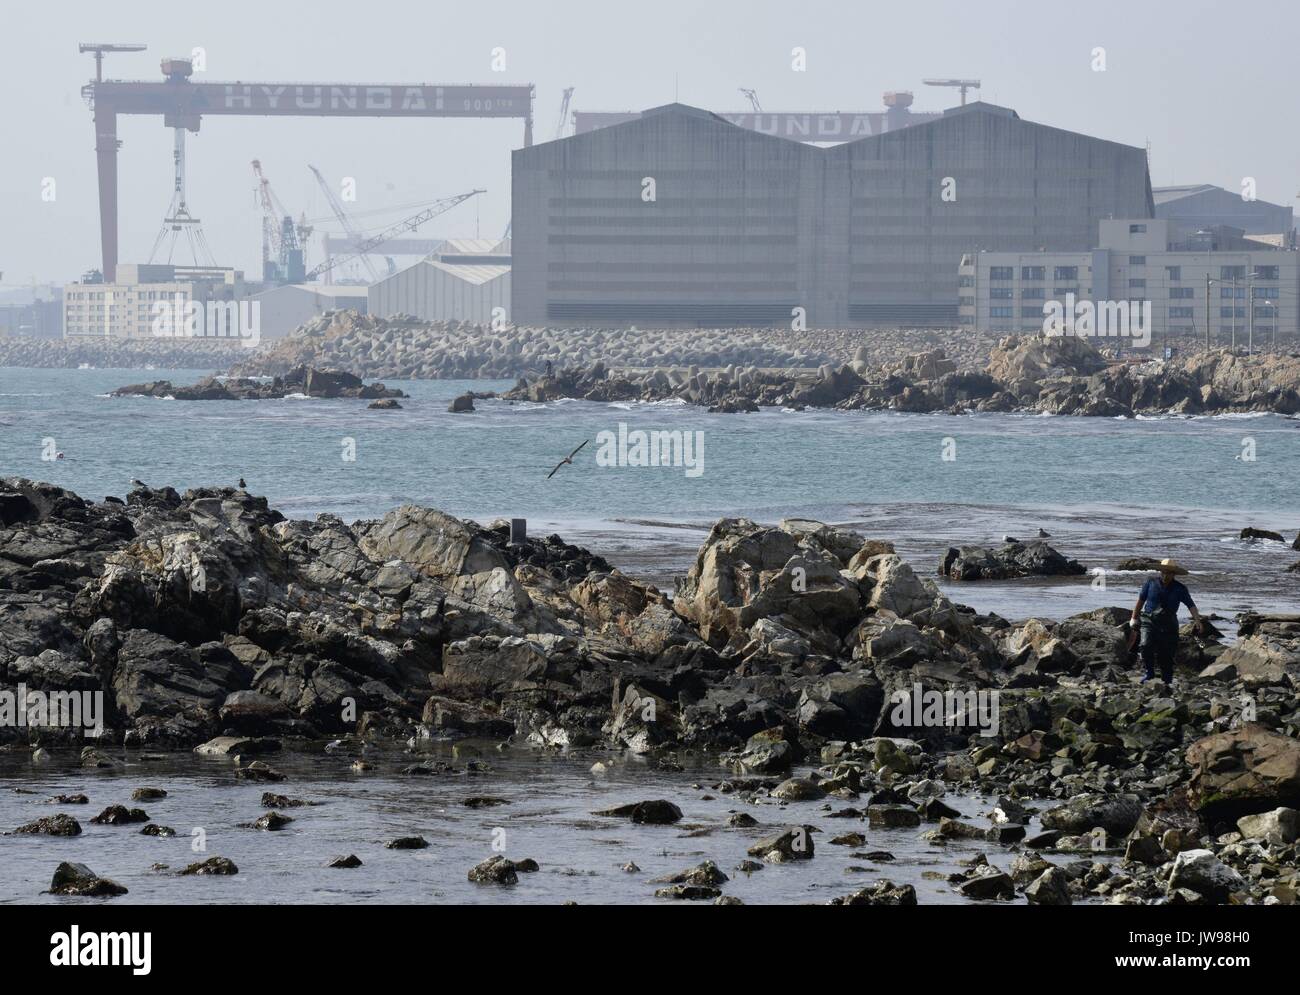 Der Hyundai Heavy Industries Werft, erstreckt sich über 720 Hektar rund um Mipo Bay, Ulsan, Südkorea, 23. März 2013. Die globale econonmic Abschwung hat die Nachfrage für große Schiffe, Hyundai Heavy Industries, die die größte Werft der Welt betreibt. | Verwendung weltweit Stockfoto